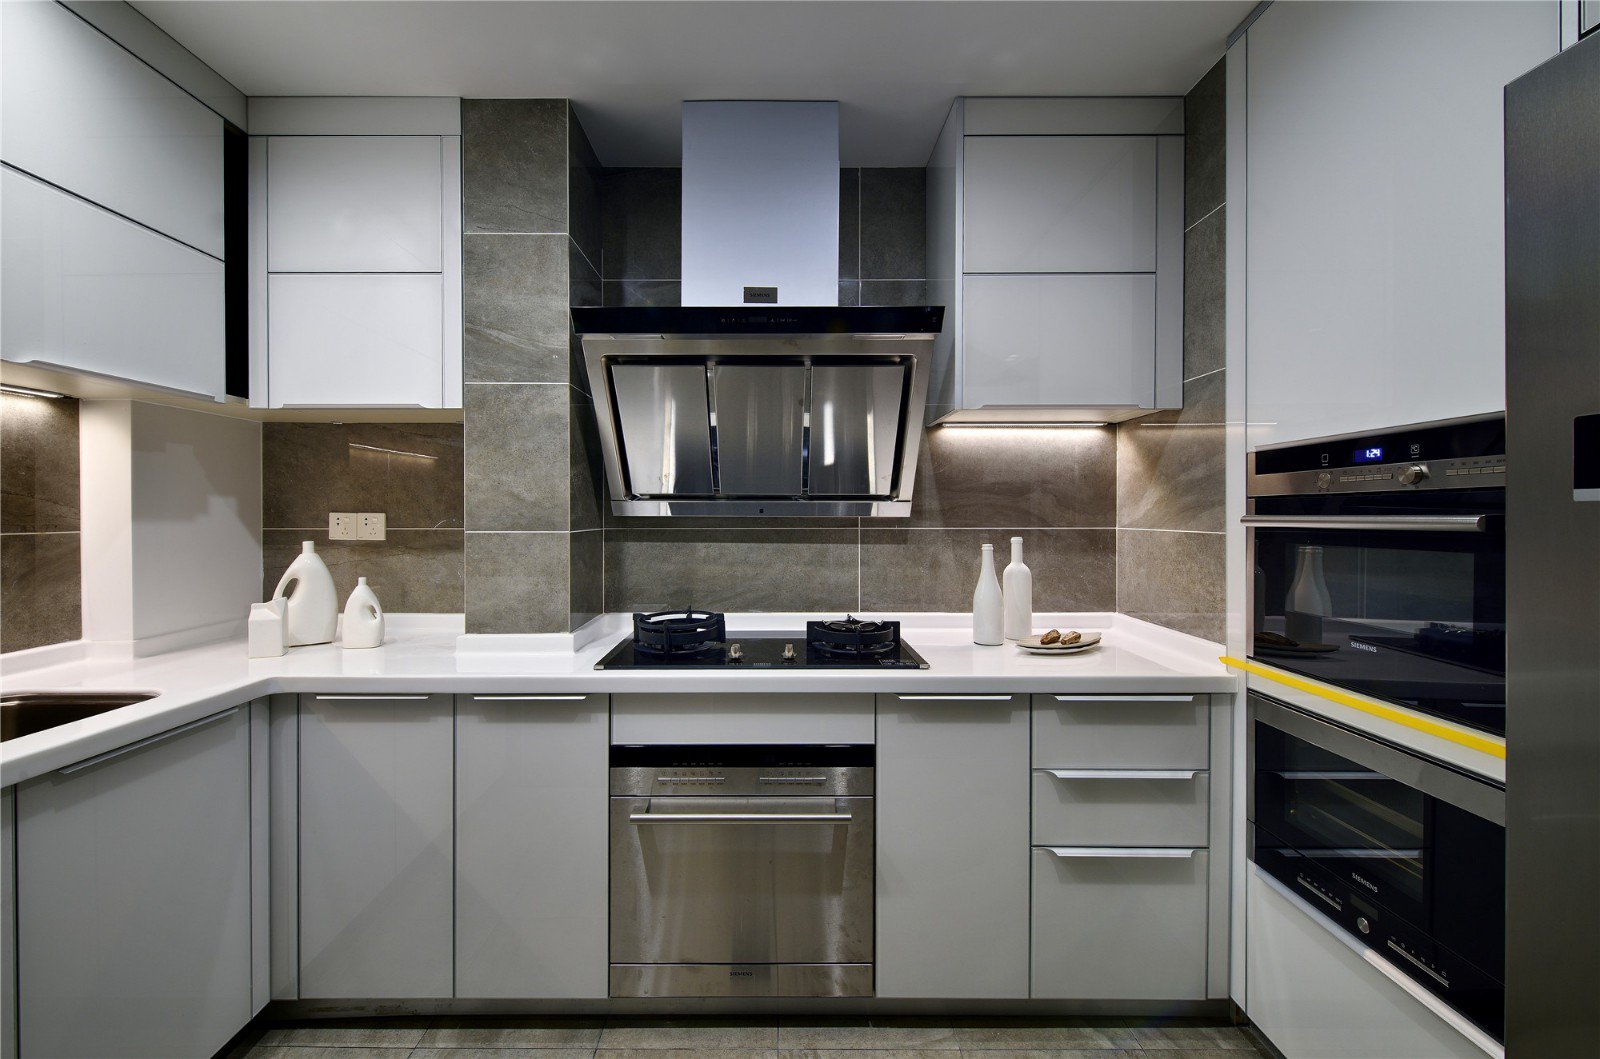 简约 现代 智能 科技感 高级感 厨房图片来自VK国际设计在现代感十足的科技cool宅的分享